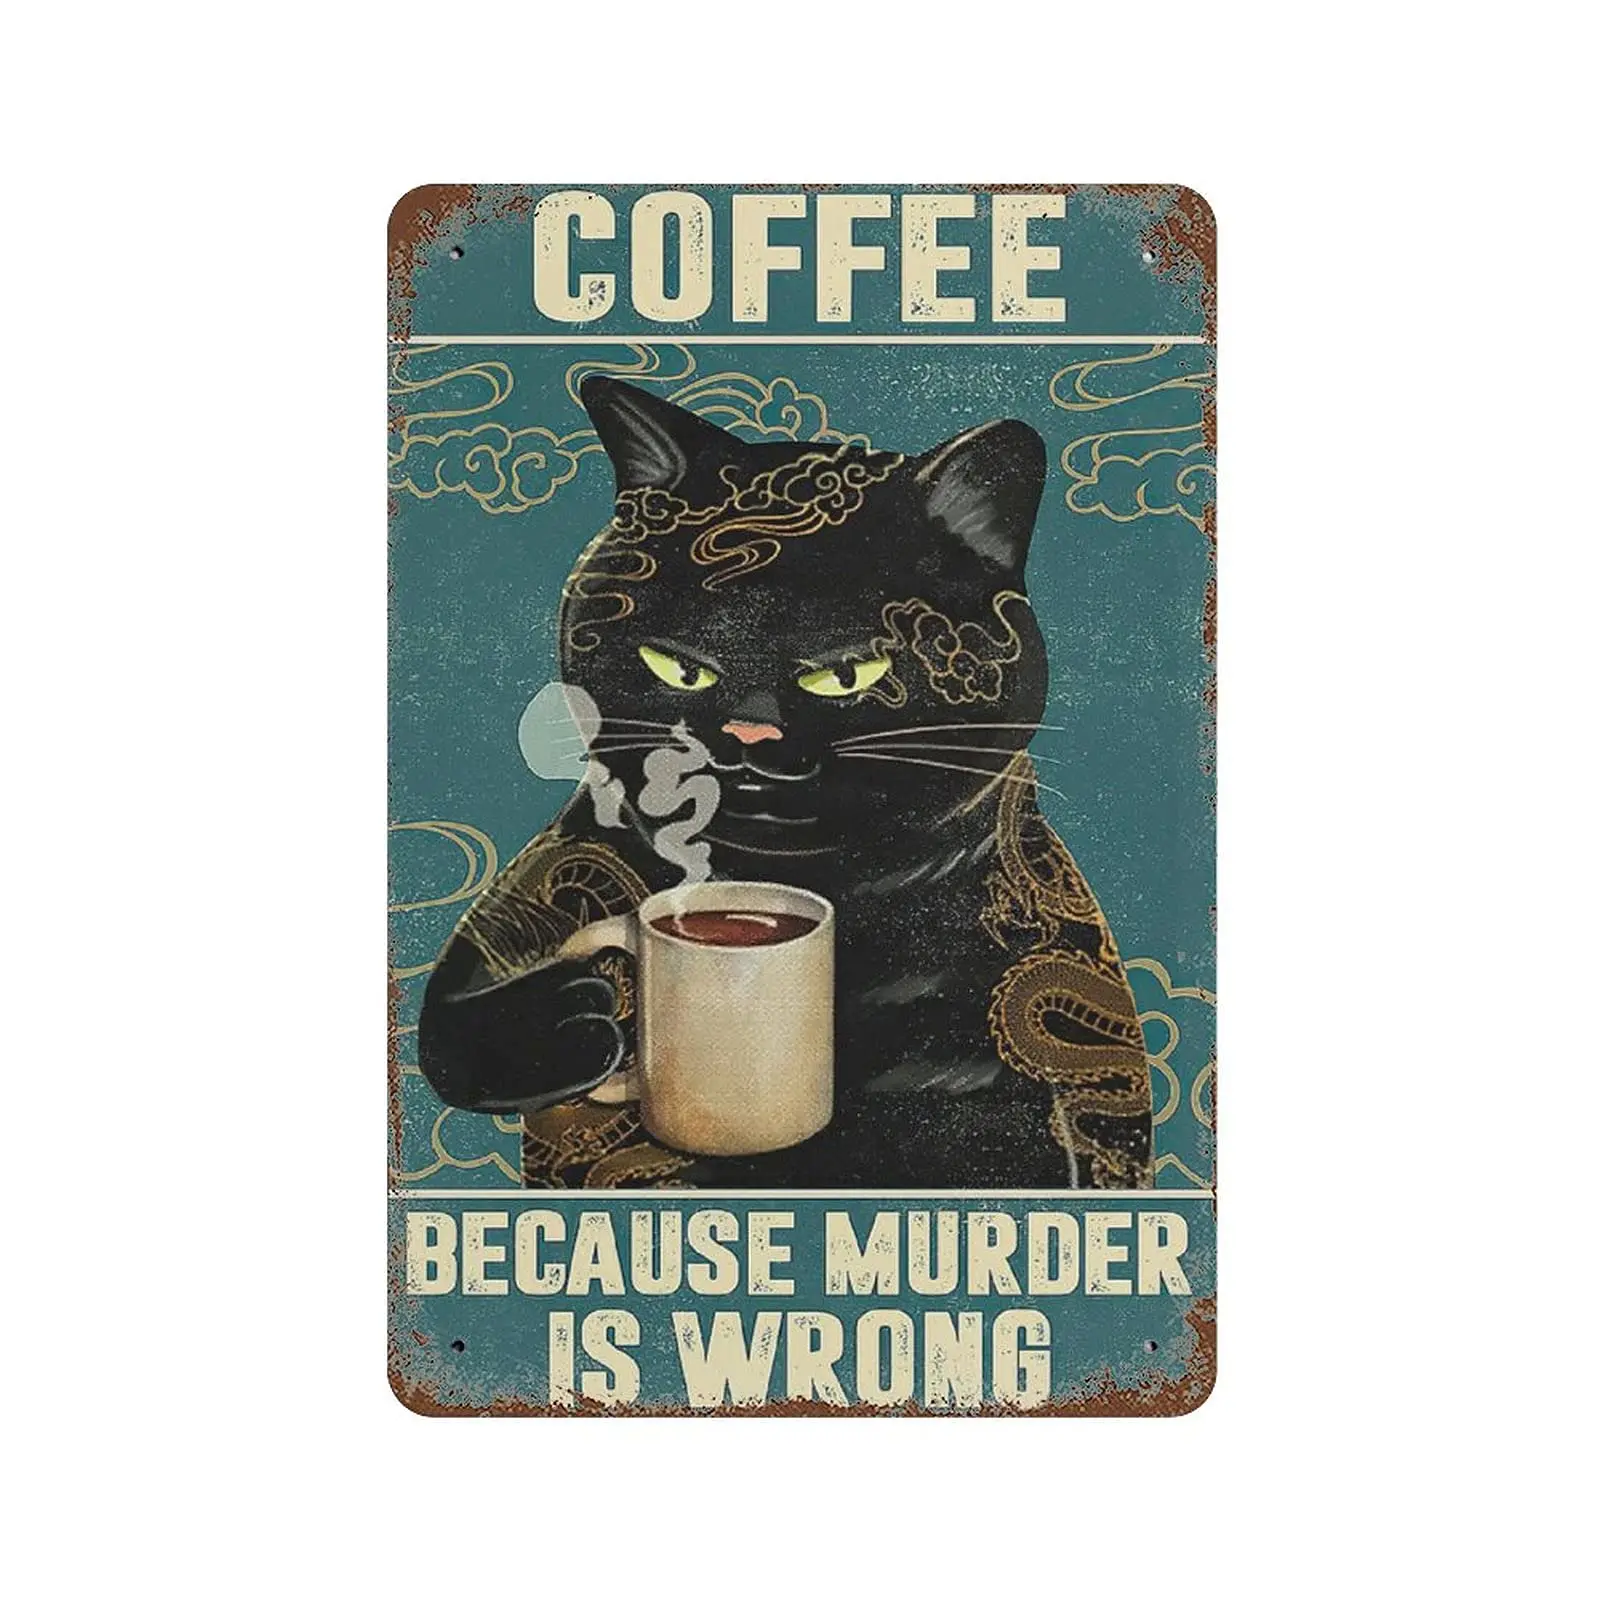 

Dreacoss металлический жестяной знак, Ретро стиль, новый плакат, железная живопись, Черный кот влюбленные кофе из-за убийства неправильный жестяной знак Dr